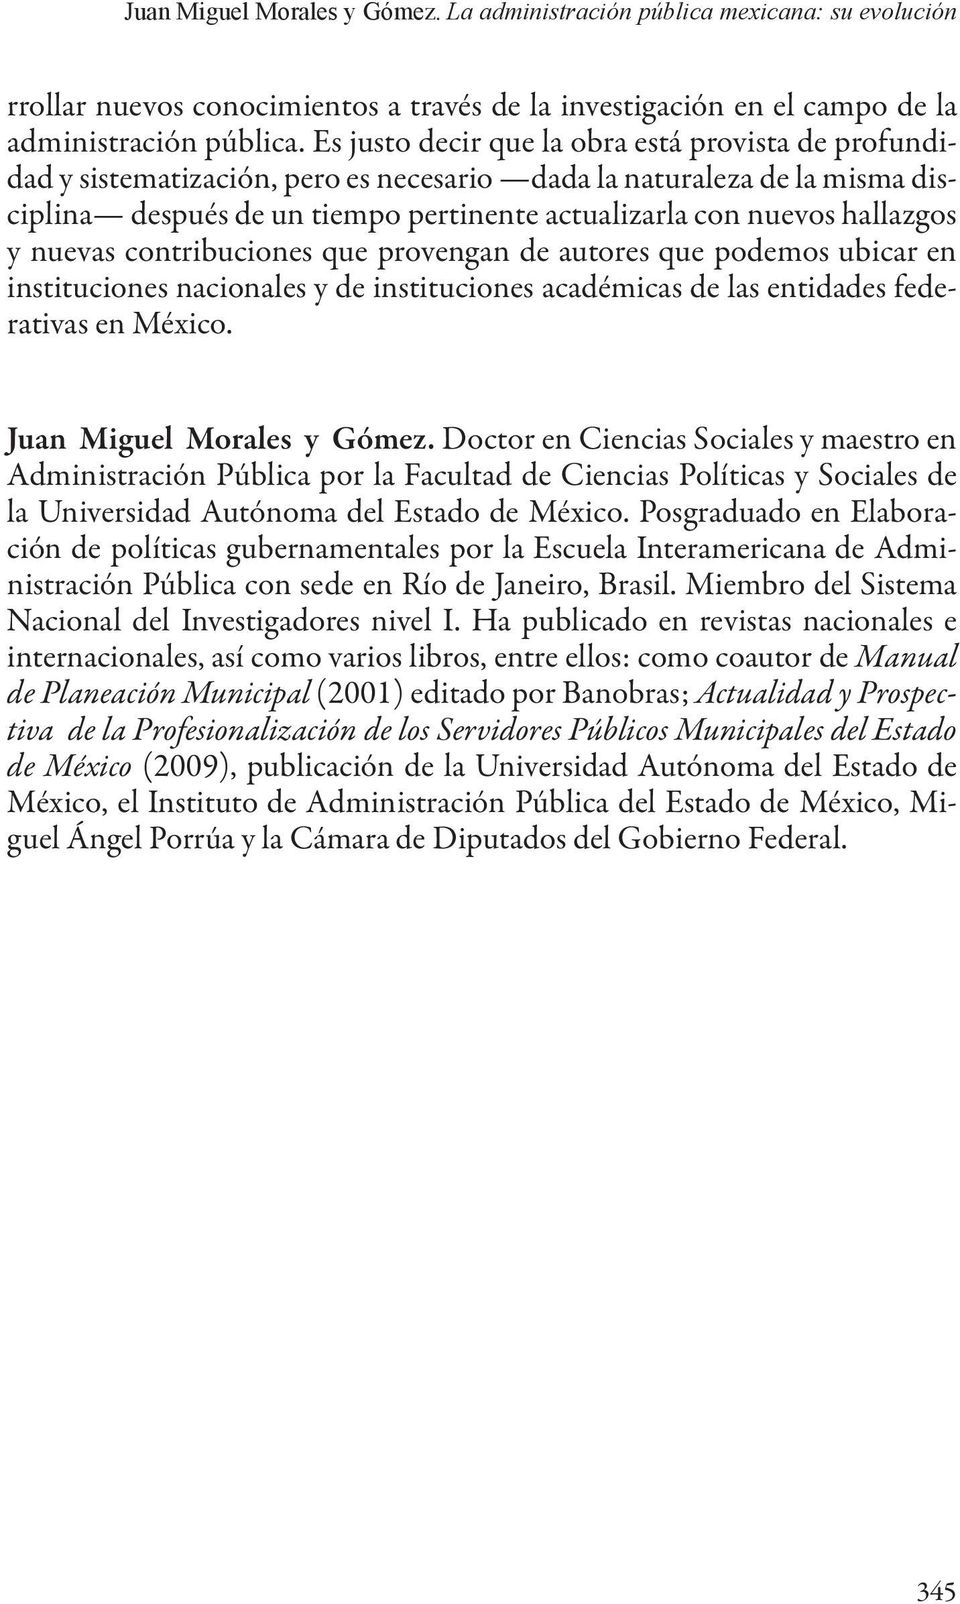 hallazgos y nuevas contribuciones que provengan de autores que podemos ubicar en instituciones nacionales y de instituciones académicas de las entidades federativas en México.